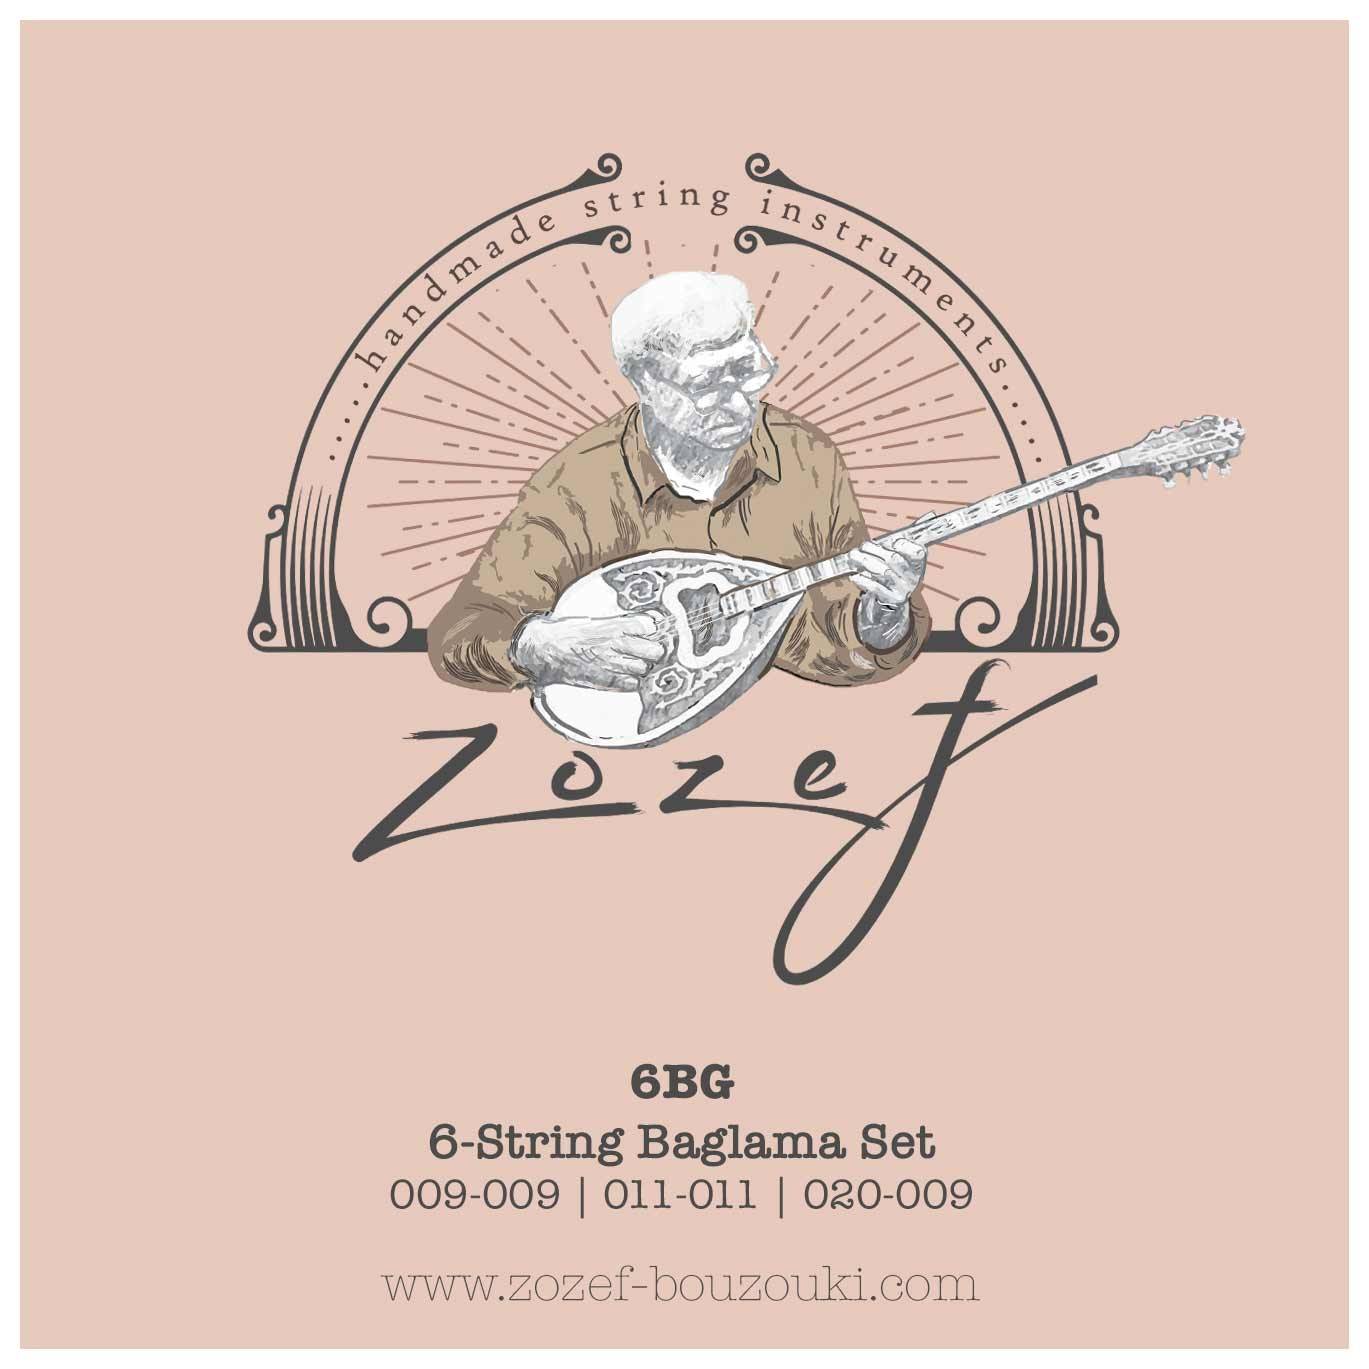 Zozef 6BG 009-020 Baglama String Set